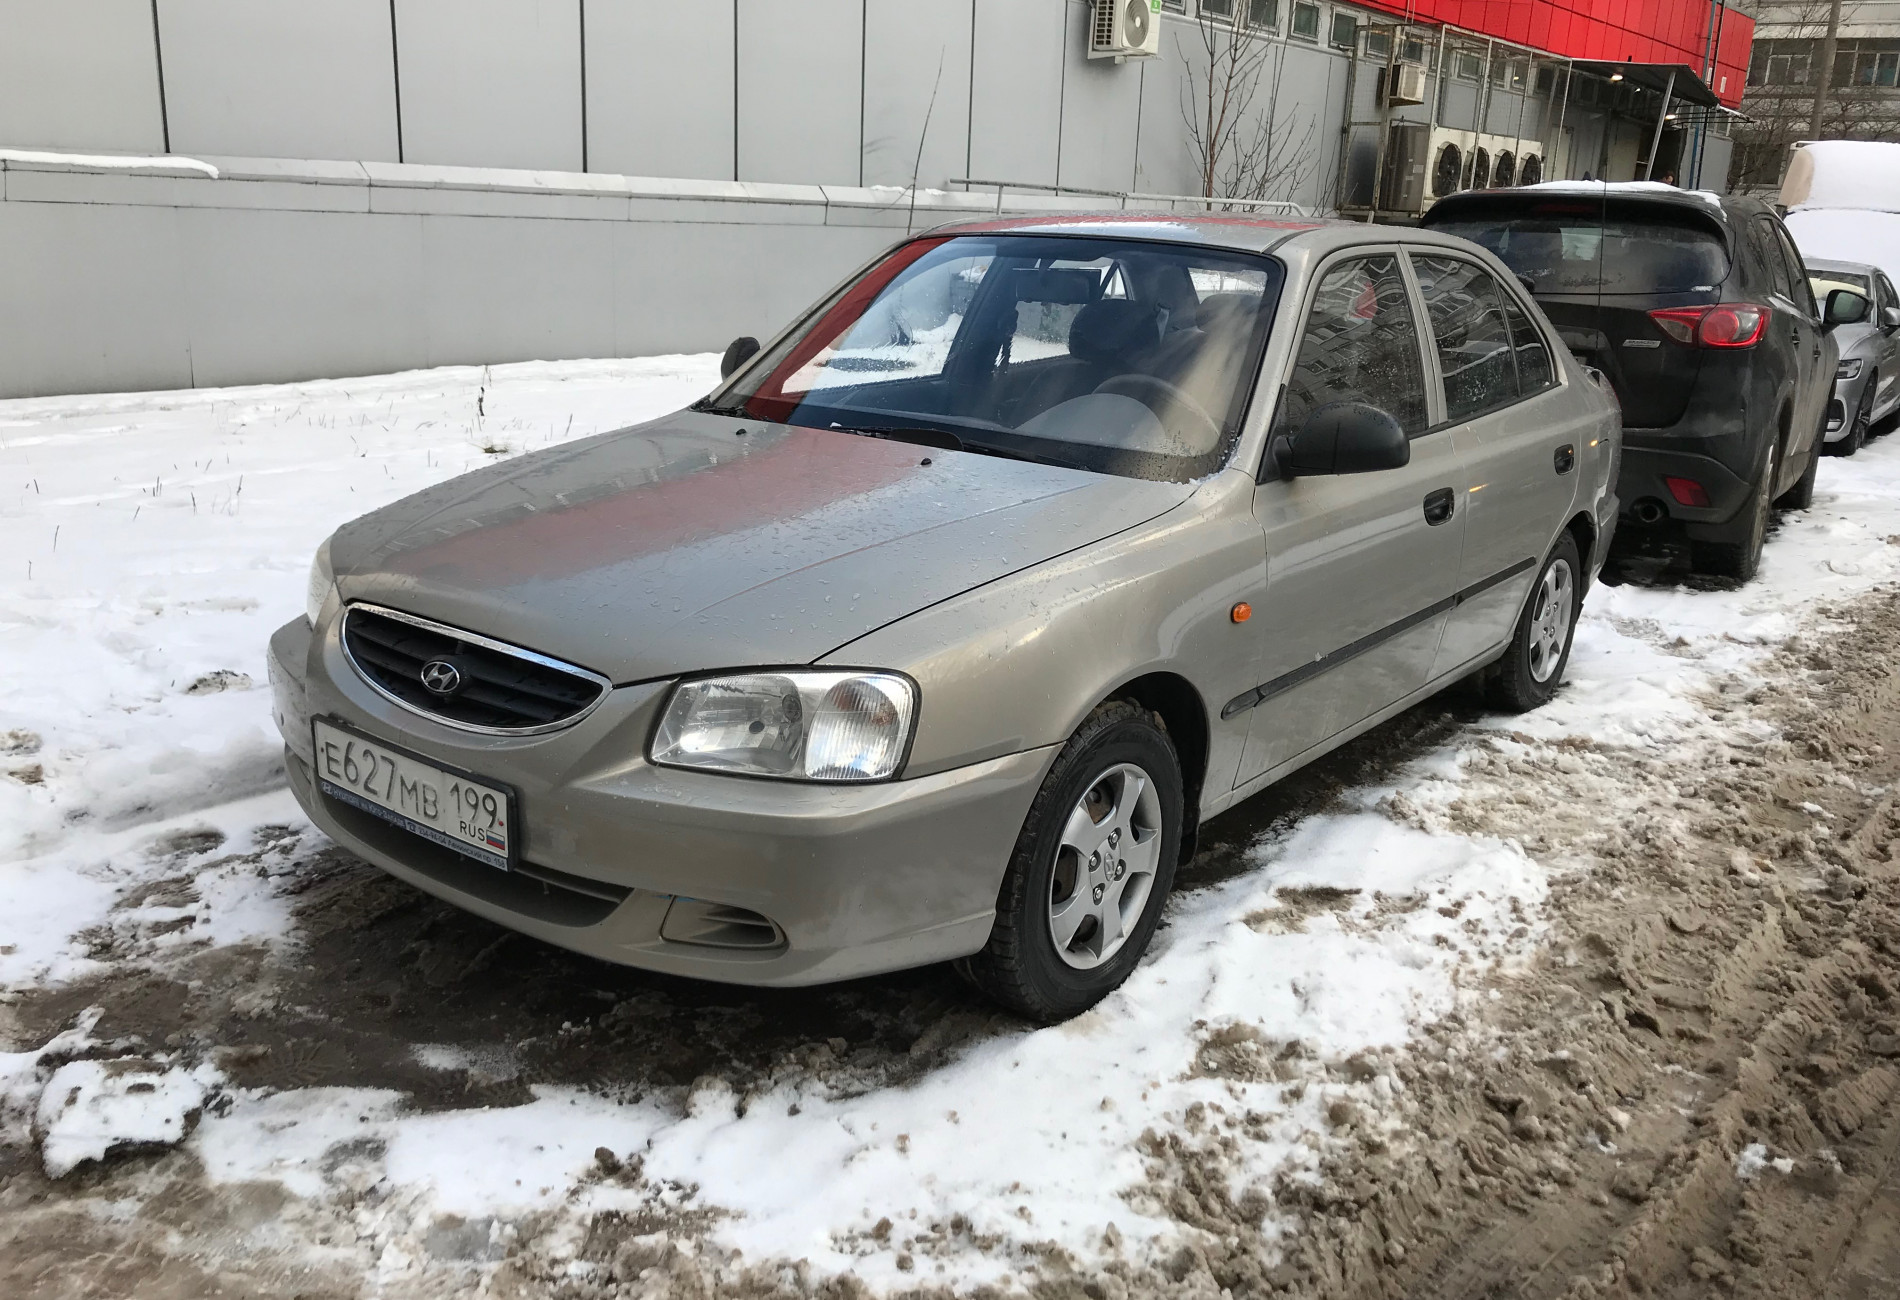 Аренда hyundai accent эконом класса 2008 года в городе Москва Каширская от 1500 руб./сутки, передний привод, двигатель: бензин, объем 1.6 литров, ОСАГО (Мультидрайв), без водителя, недорого - RentRide